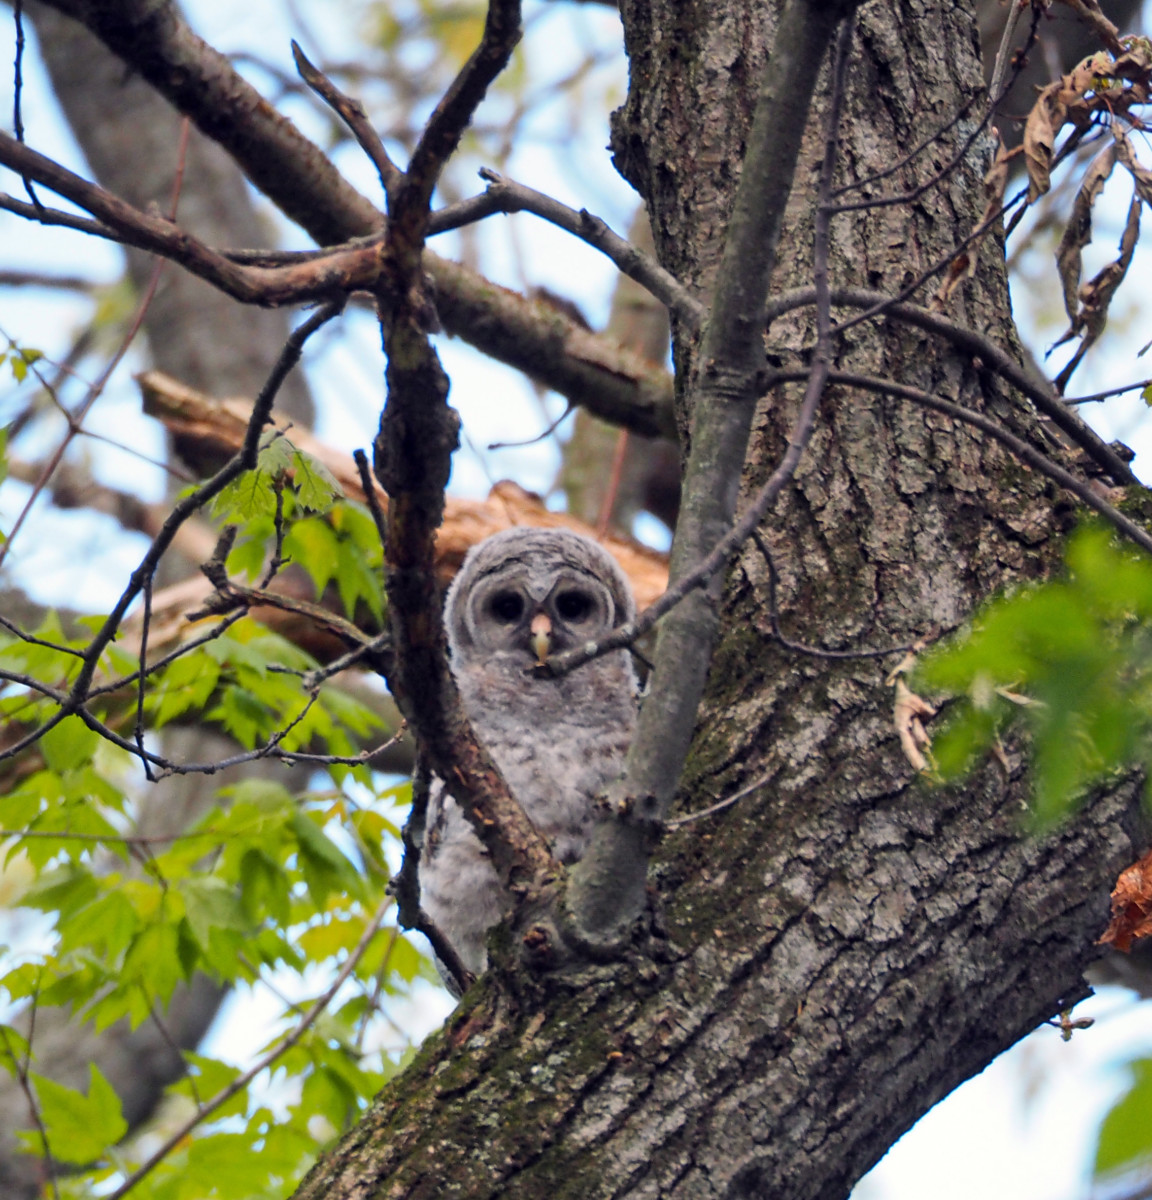 Owlet in tree